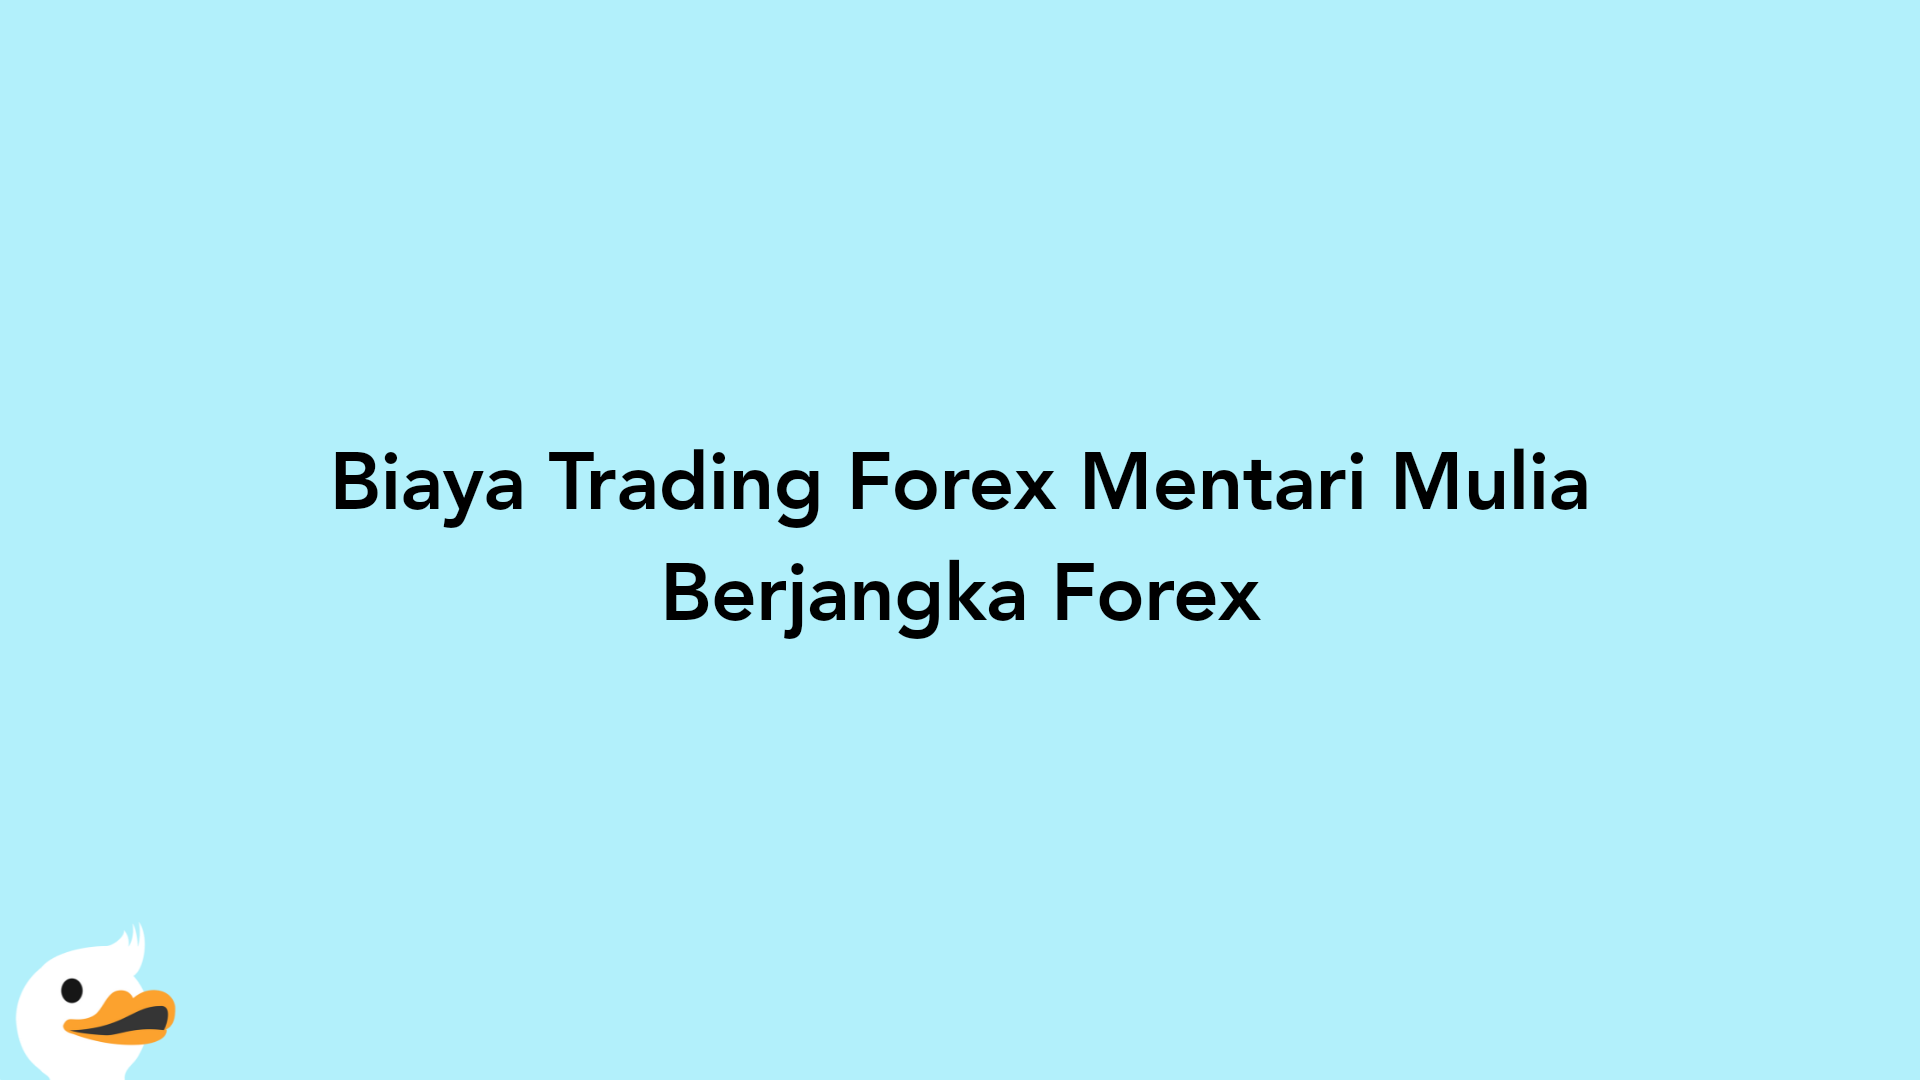 Biaya Trading Forex Mentari Mulia Berjangka Forex